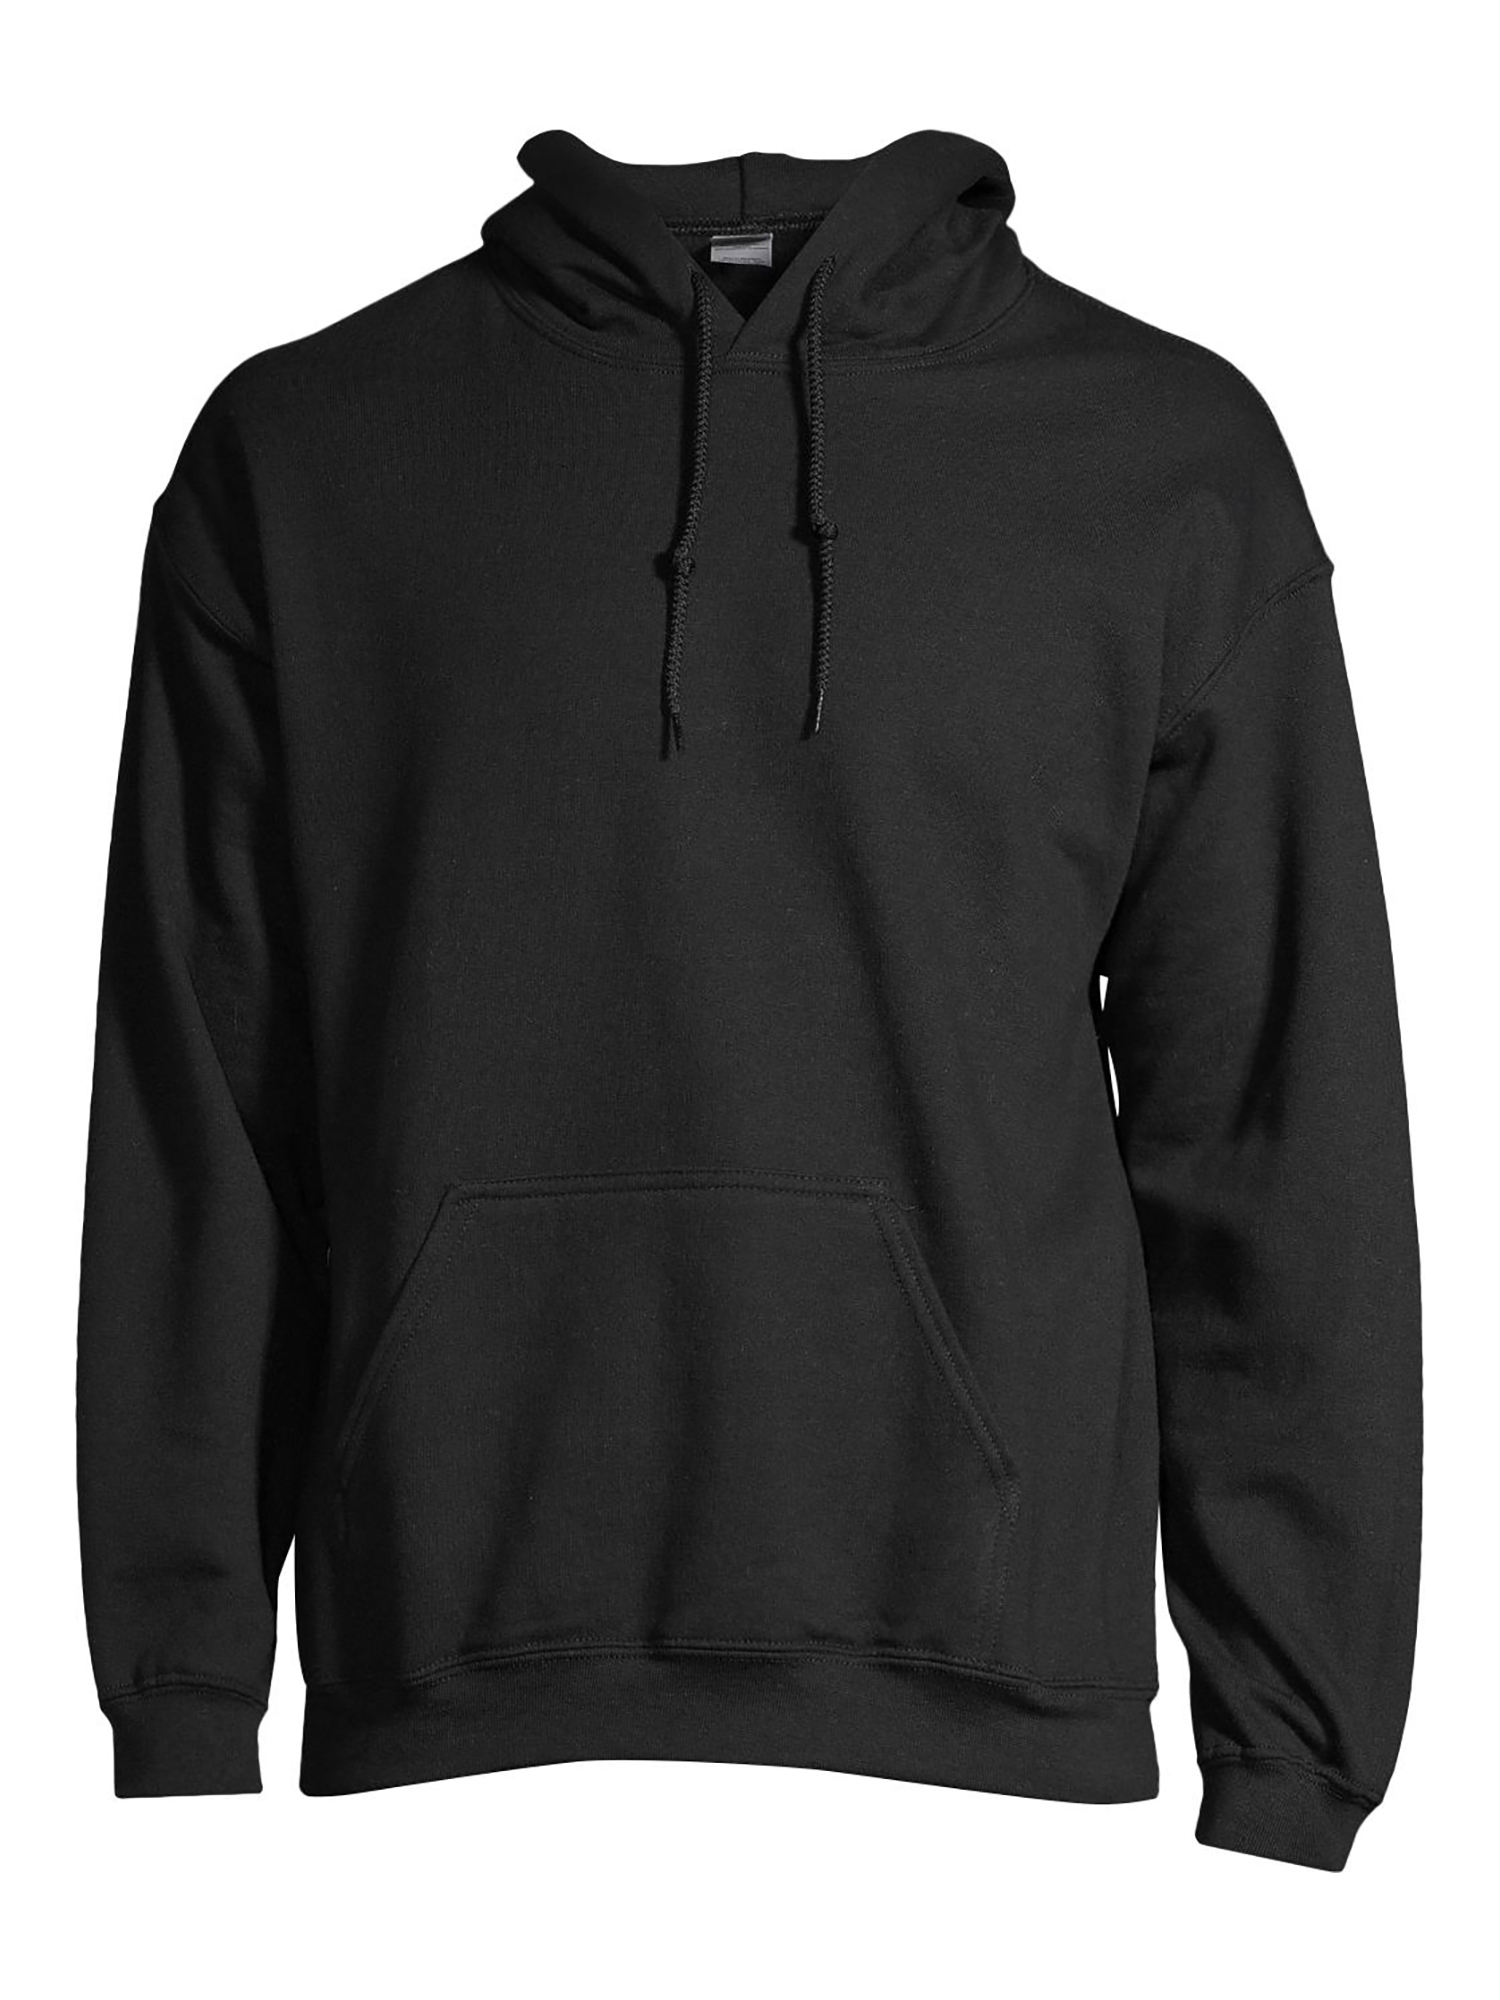 Gildan Unisex Heavy Blend Fleece Hooded Sweatshirt, Size Small to 3XL - image 1 of 6